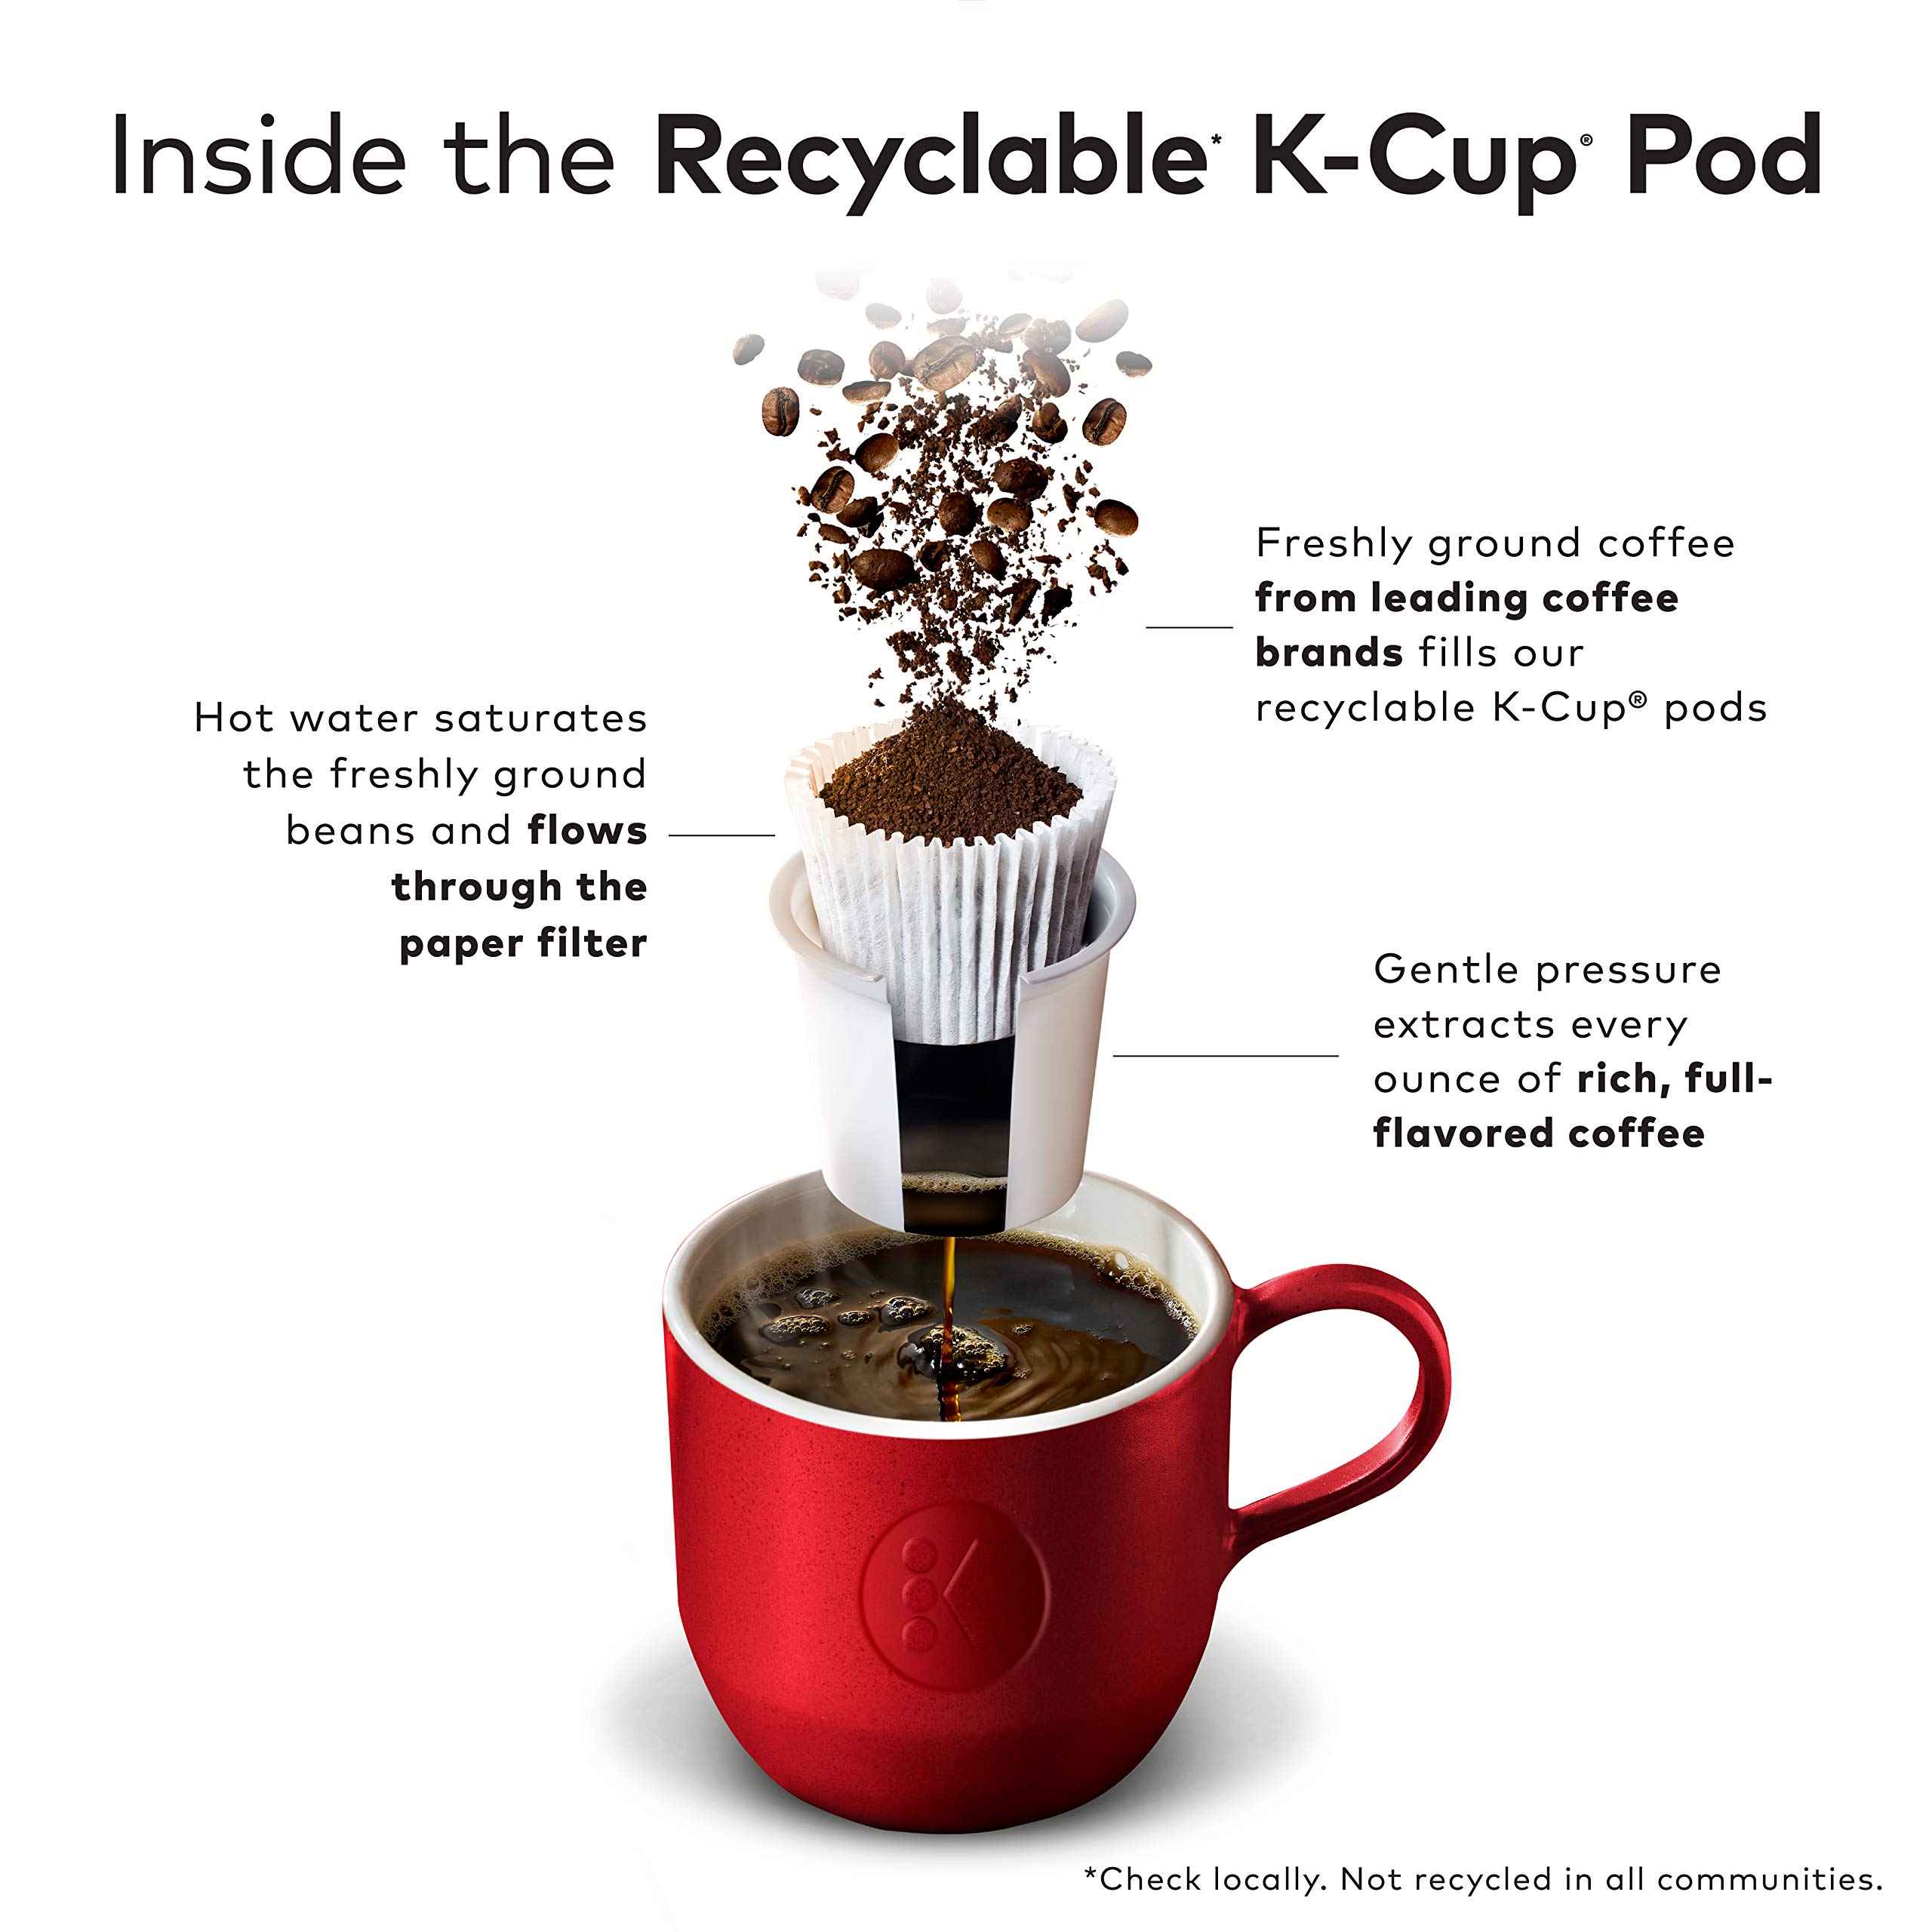 Café Escapes Chai Latte Keurig Single-Serve K-Cup Pods, 24 Count